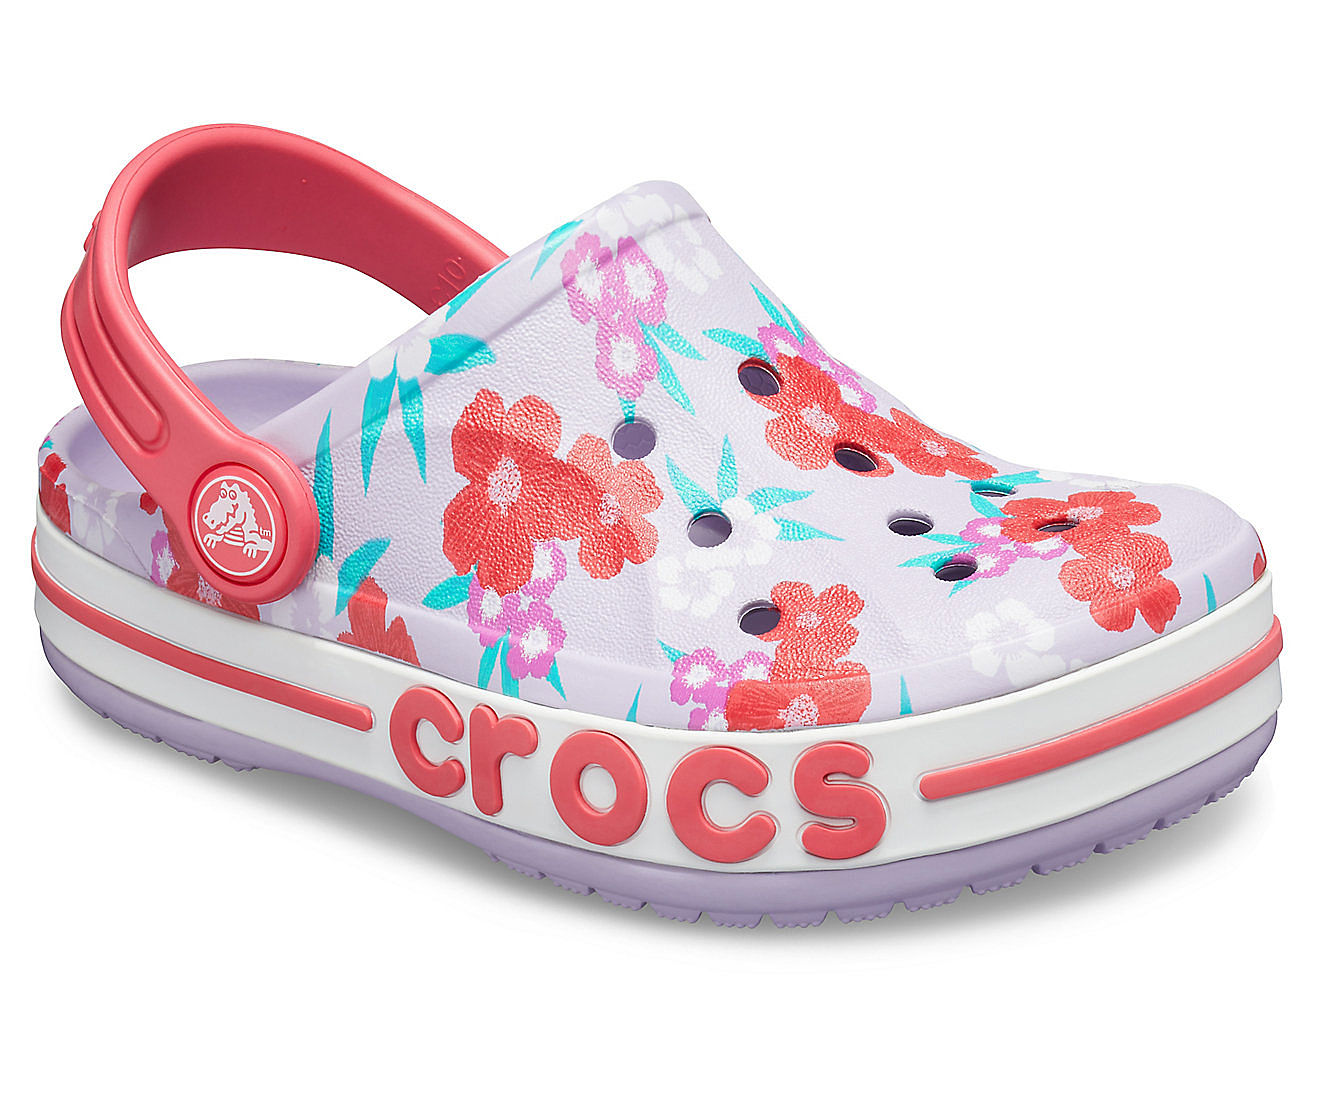 crocs for $20